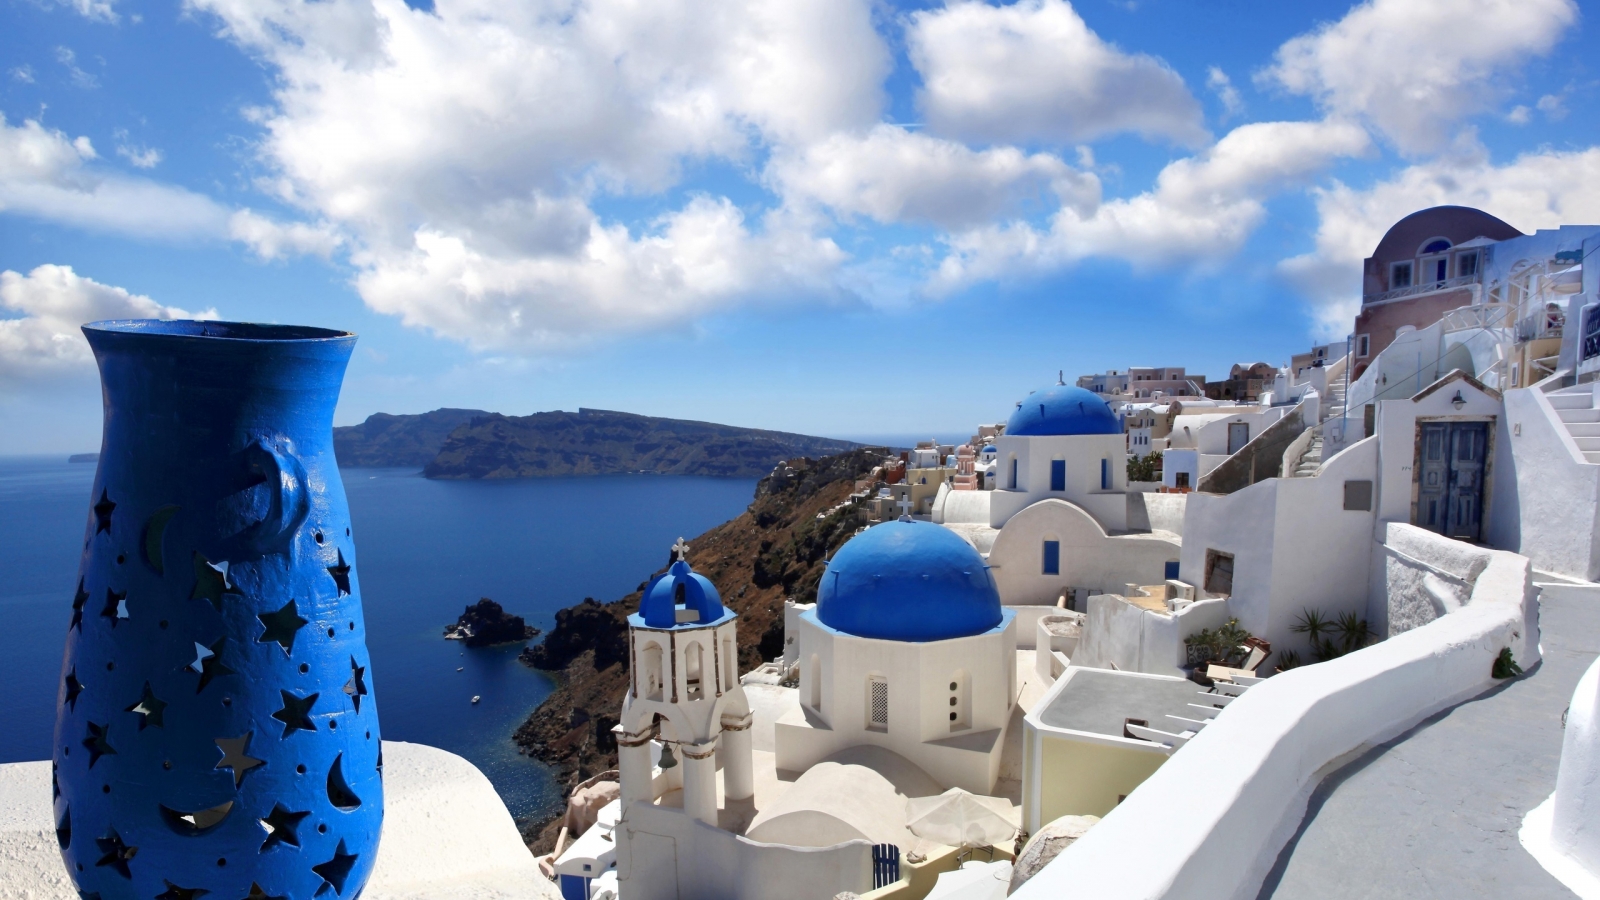 Blue Santorini Greece for 1600 x 900 HDTV resolution